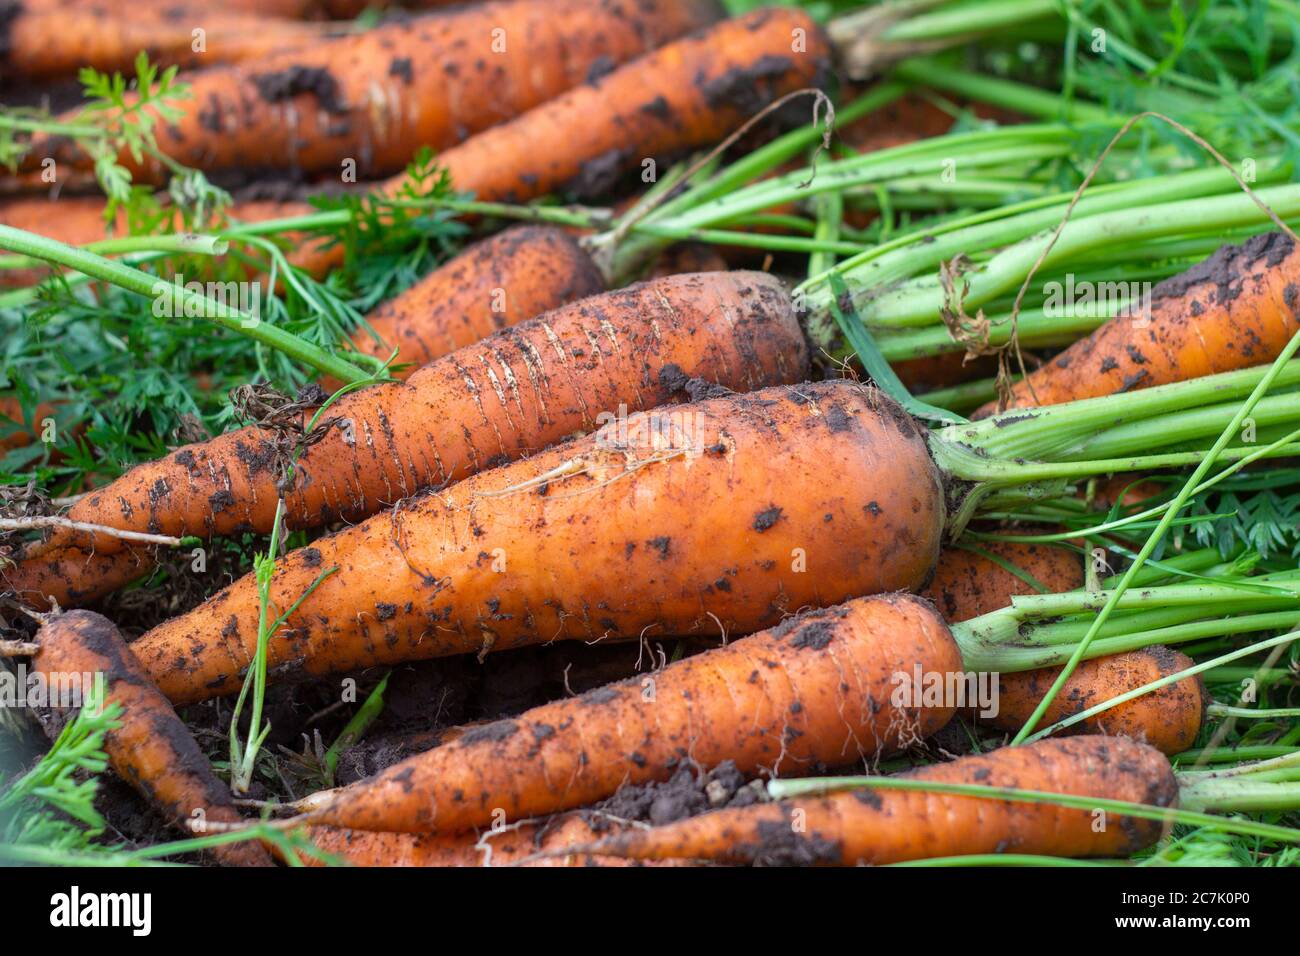 Frisch gegrabene Karotten mit Spitzen auf dem Boden. Große saftige ungewaschene Karotten auf einem Feld auf dem Boden Nahaufnahme.Ernte.Herbst Stockfoto